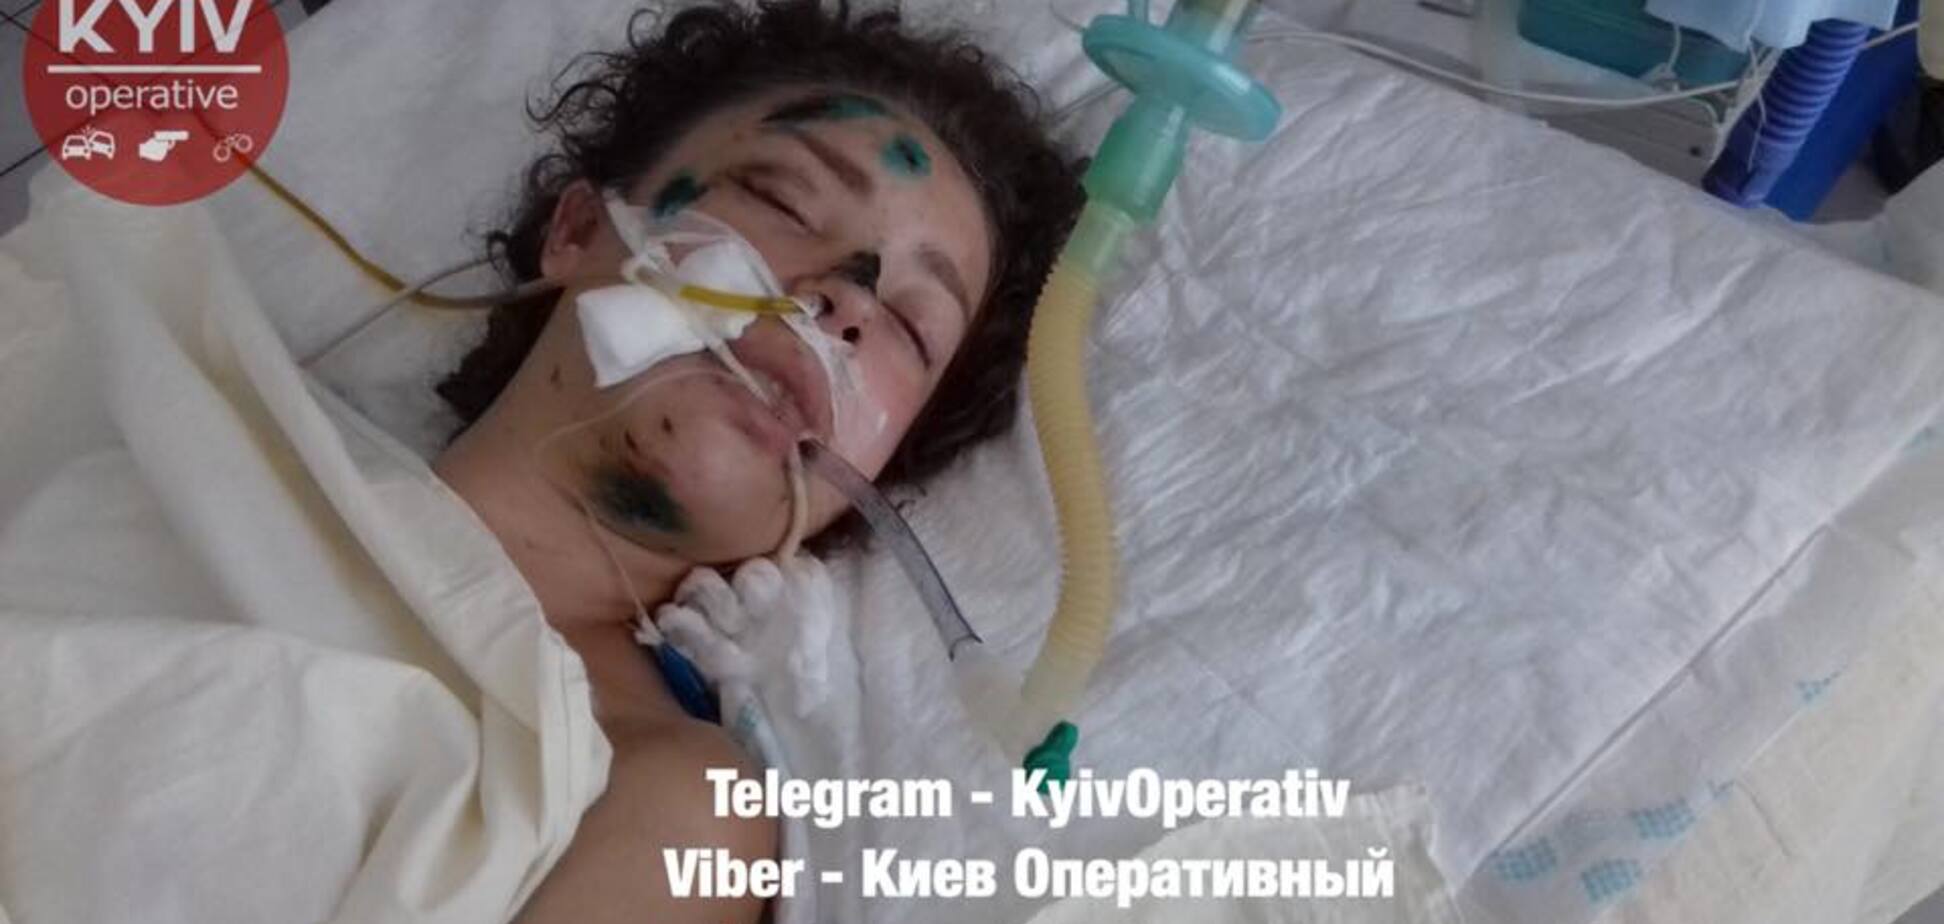 Без сознания после ДТП: украинцев попросили о помощи в опознании девушки